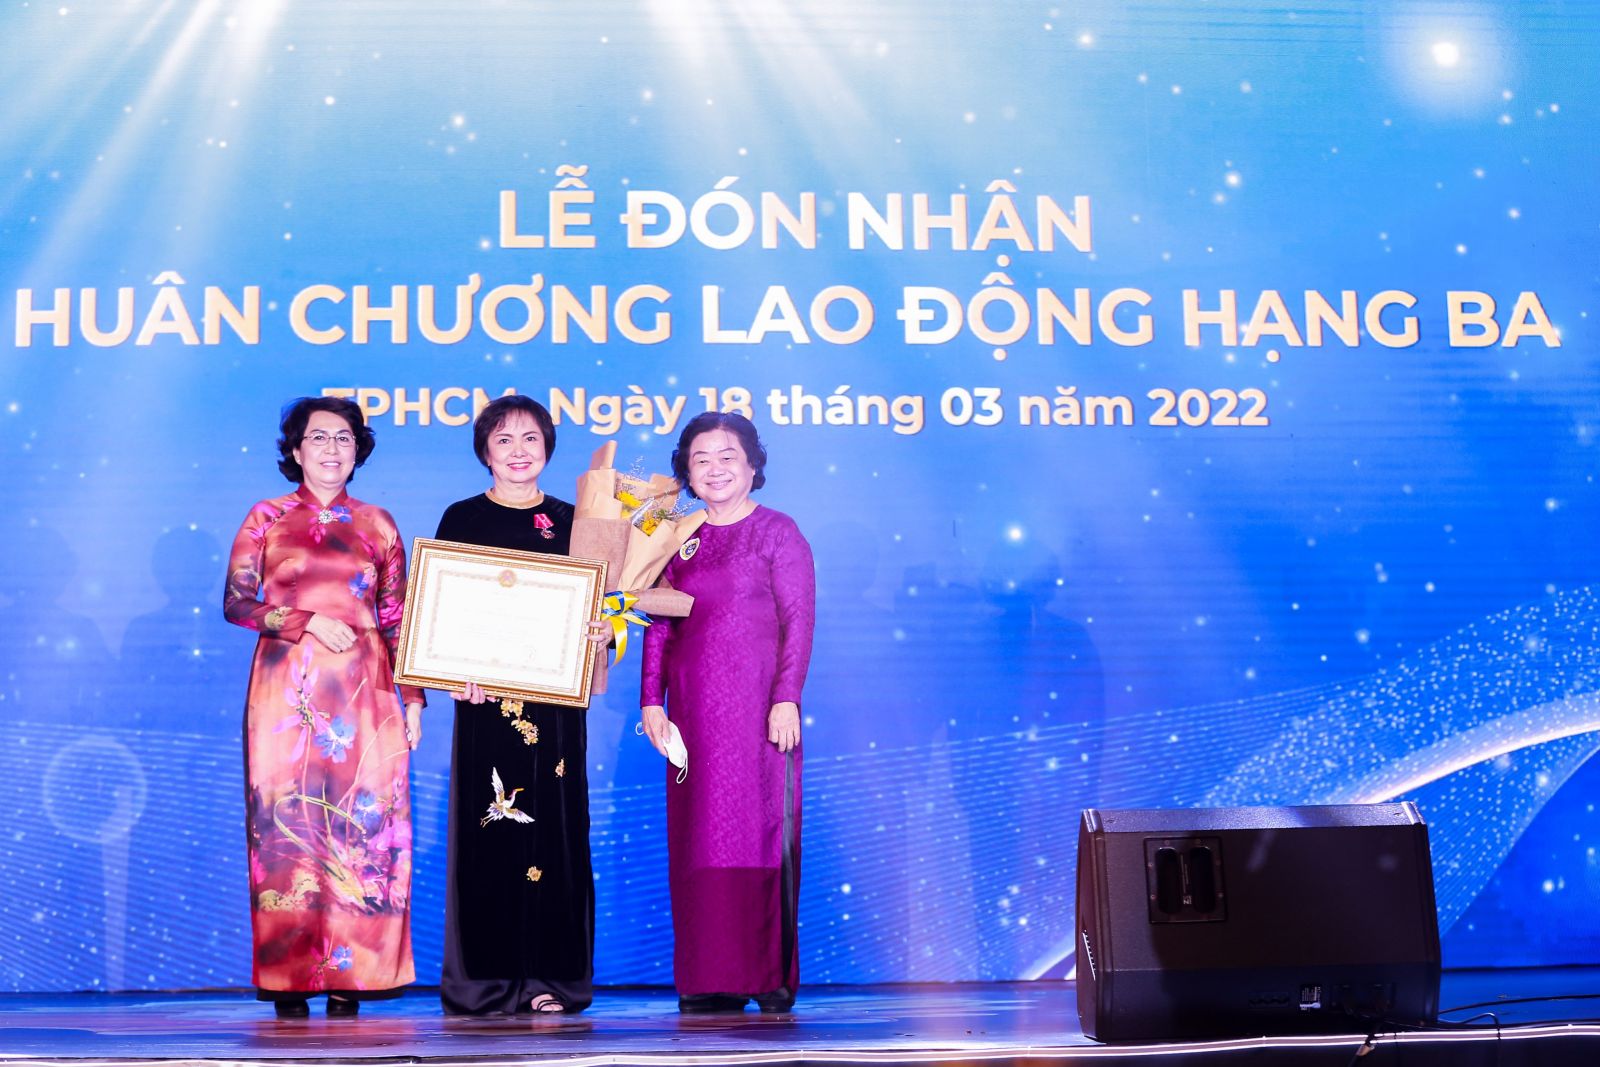 Bà Cao Thị Ngọc Dung vinh dự được Chủ tịch nước trao tặng Huân chương lao động Hạng Ba